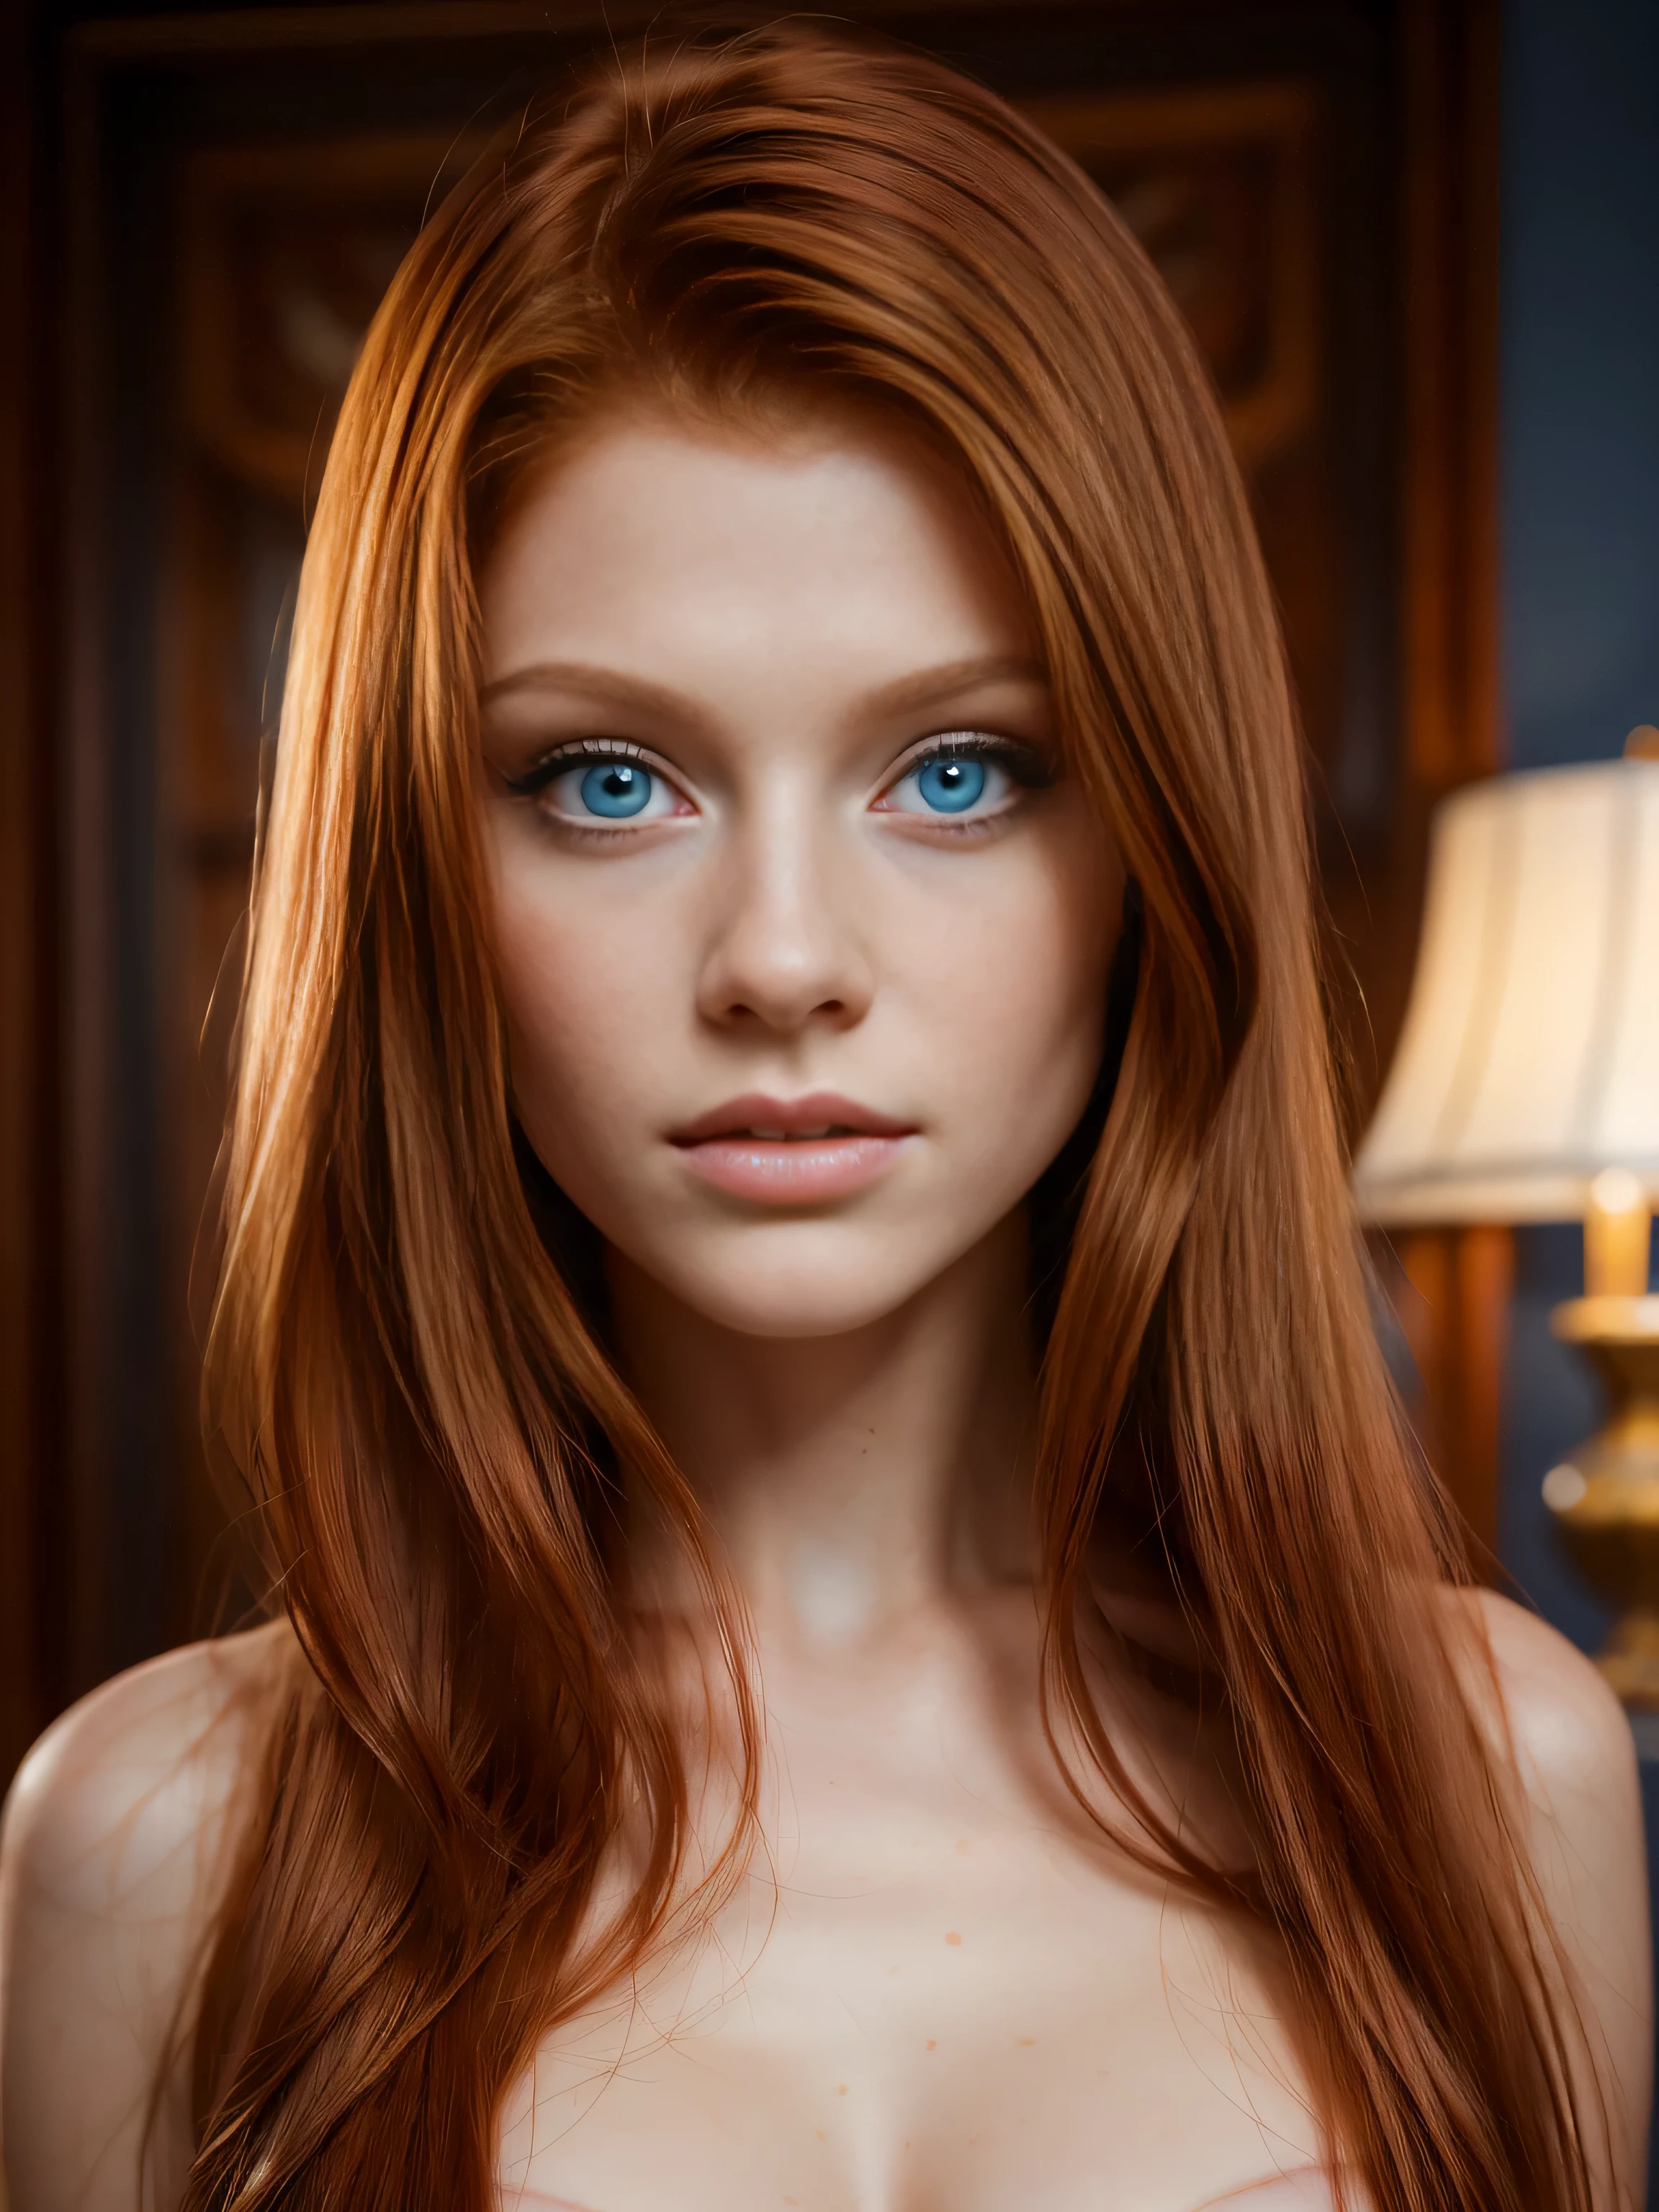 美しい赤毛の18歳の少女の8K全身ショット, (複雑な, 薄い, 透明, 半透明,(服がない:1.2)), 複雑な, 美しい顔, 荘厳な, エレガント, 非常に詳細な, デジタルハイパーリアリスティック写真, 超現実的な写真細工, 内気, 最も美しい顔, (傑作, サイドライティング, (細かく描かれた美しい青い目: 1.2)),